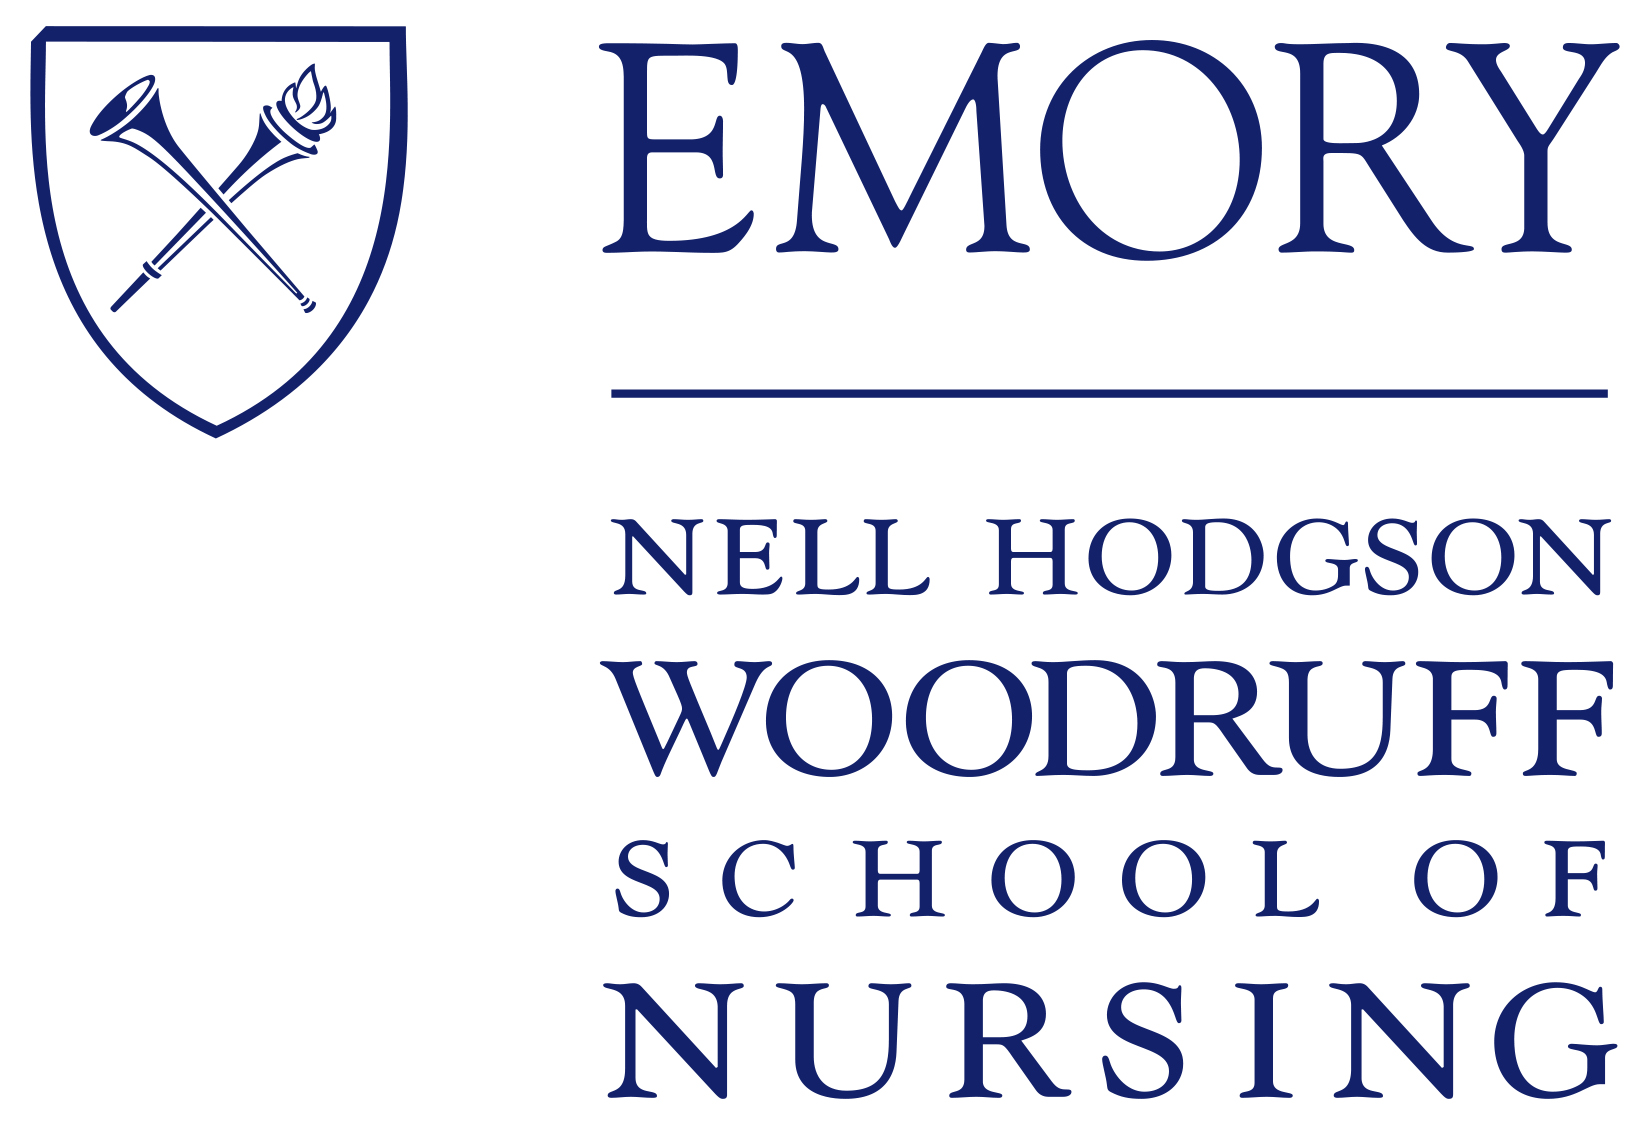 Emory_Nursing_logo